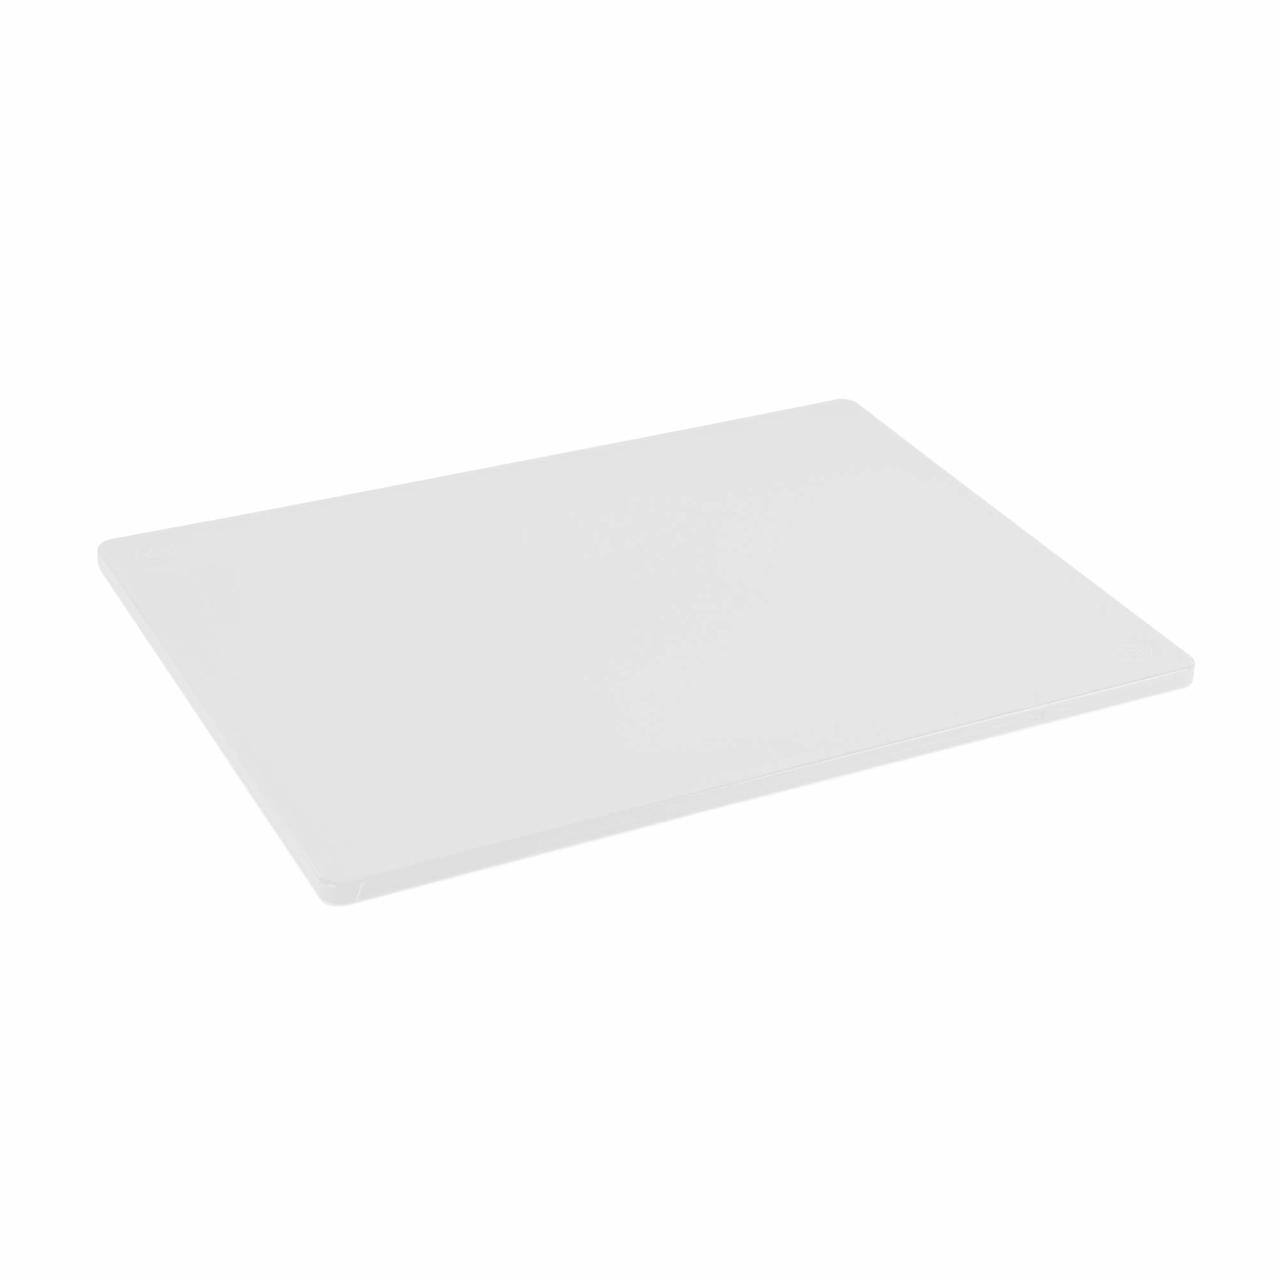 Plastic Cutting Board - Haccp-Compliant - Rectangle - White - 18